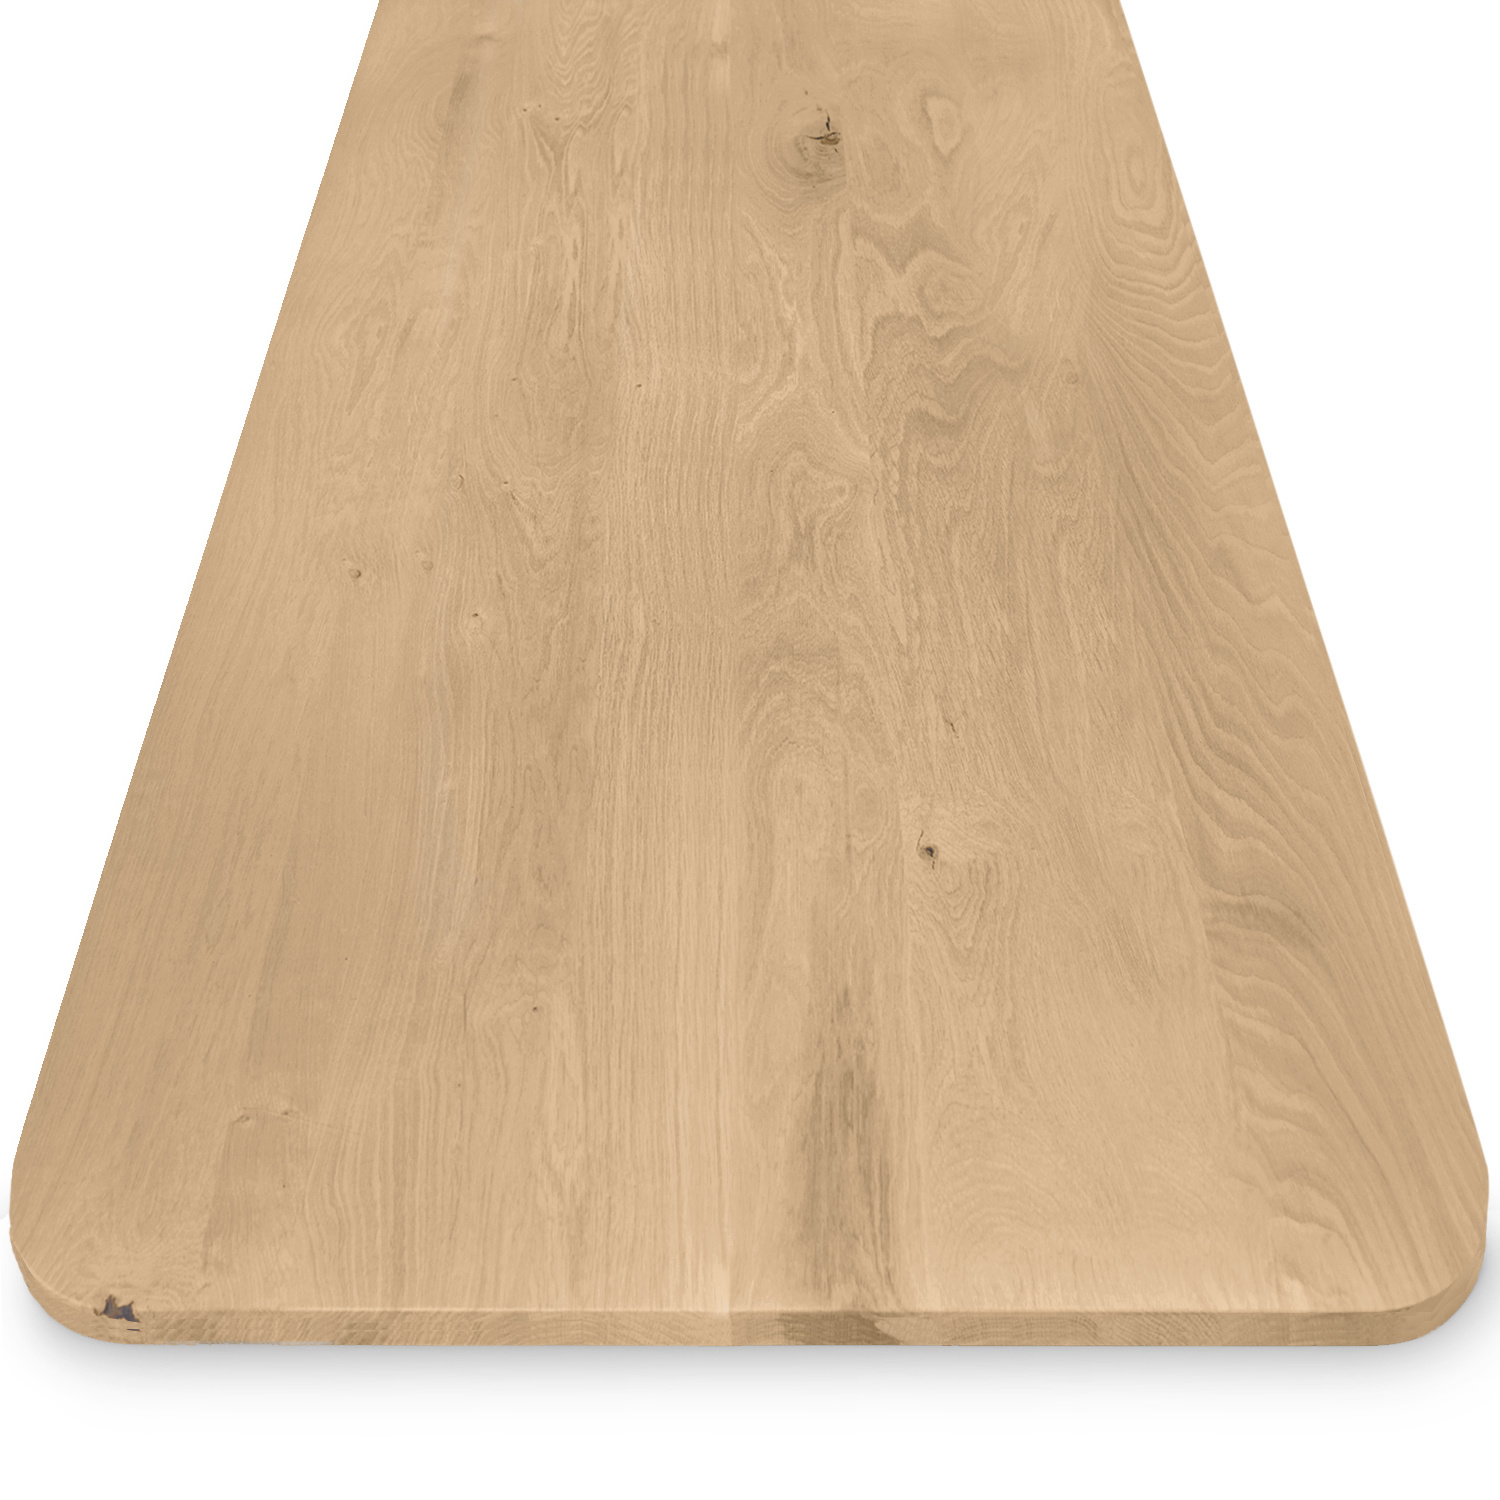  Eiken tafelblad met ronde hoeken op maat - 2,7 cm dik (1-laag) - rustiek Europees eikenhout - met brede lamellen (circa 10-12 cm) - verlijmd kd 8-12% - 50-120x50-248 cm